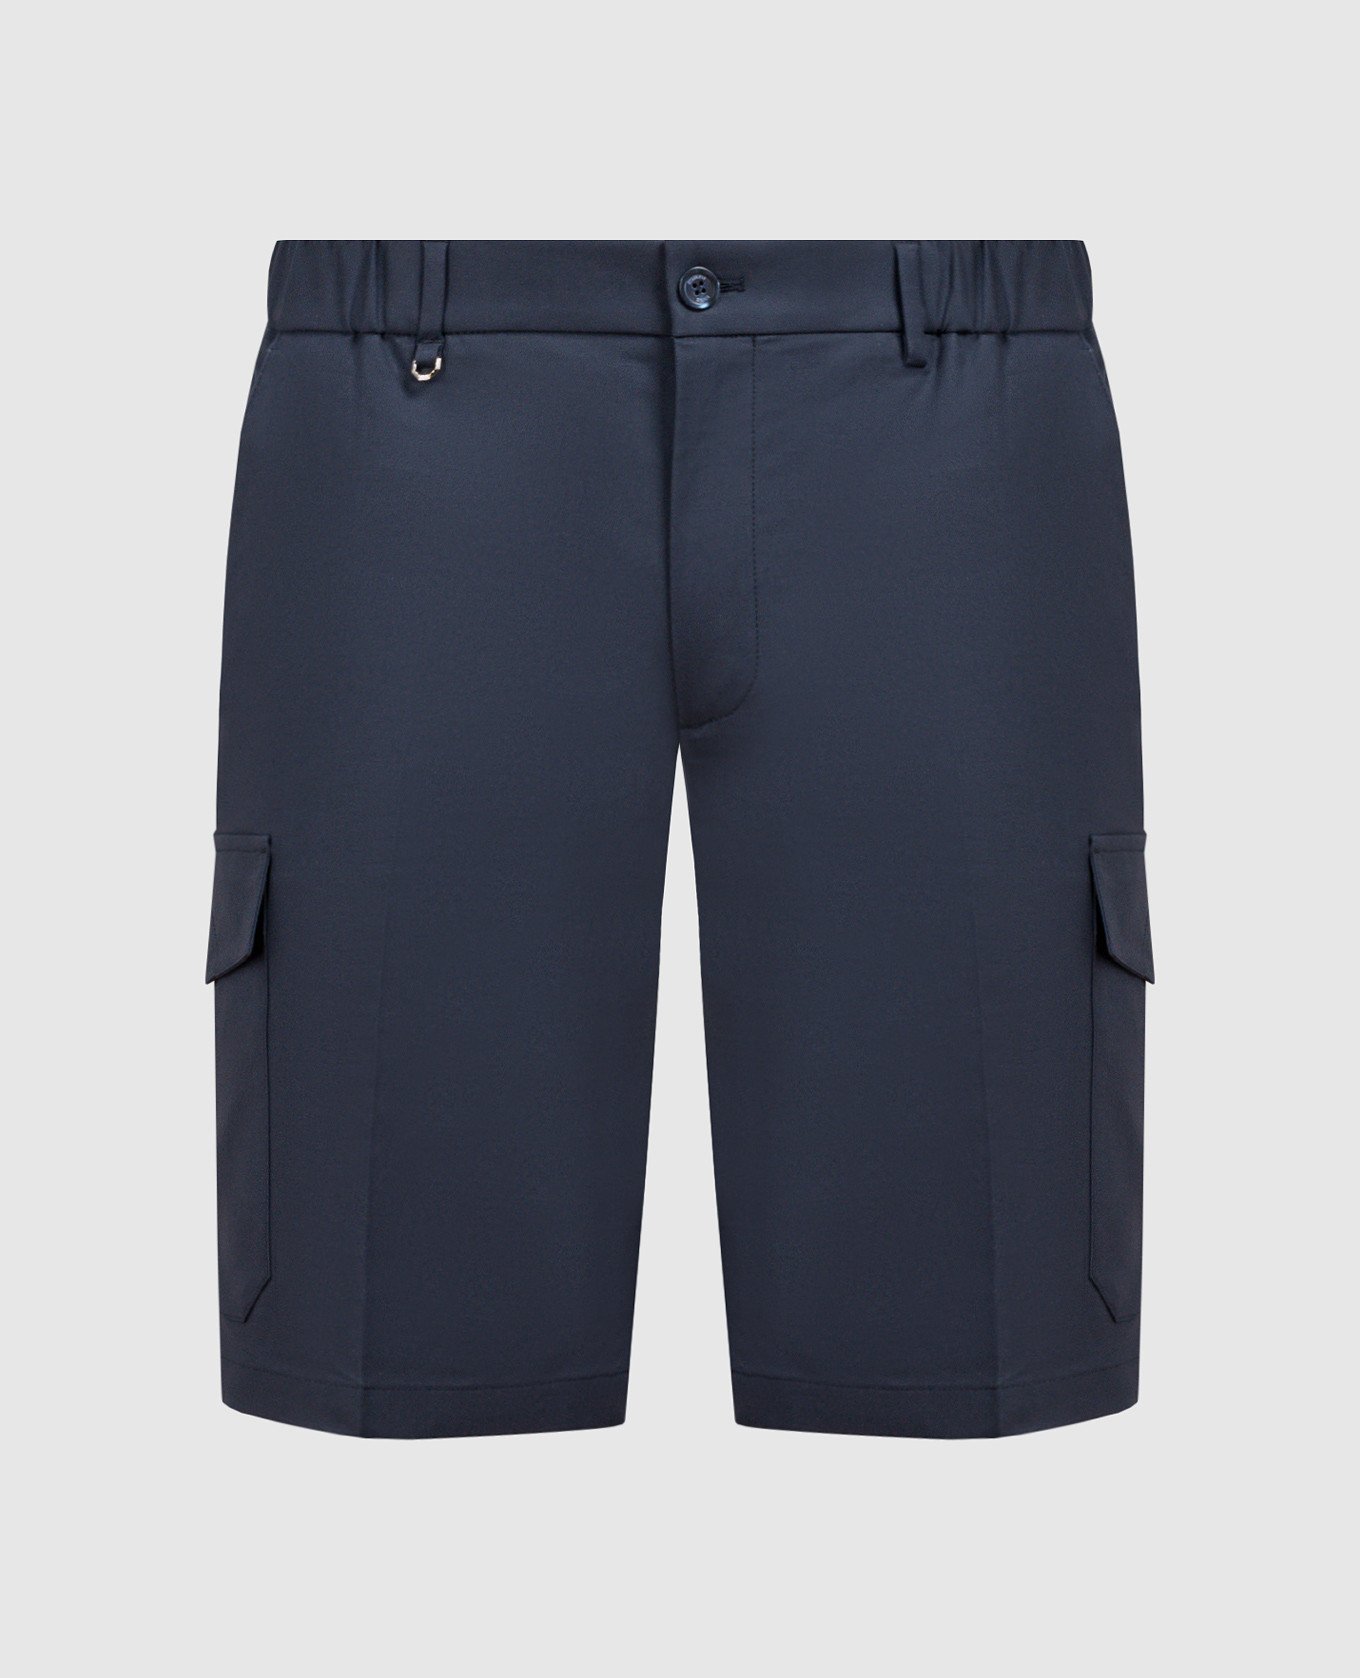 Blue cargo shorts